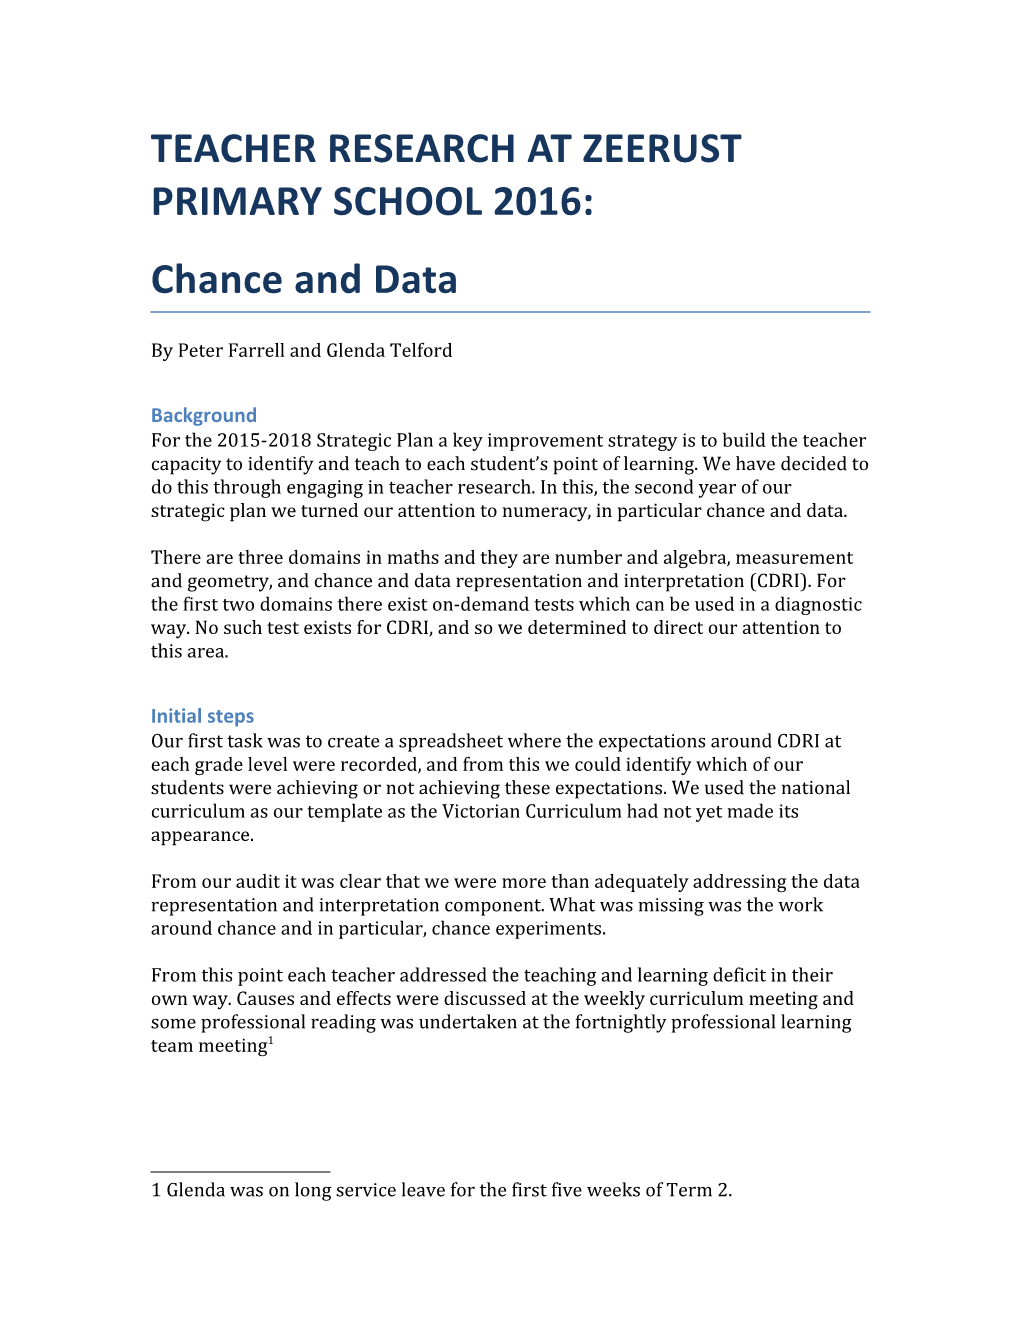 Teacher Research at Zeerust Primary School 2016